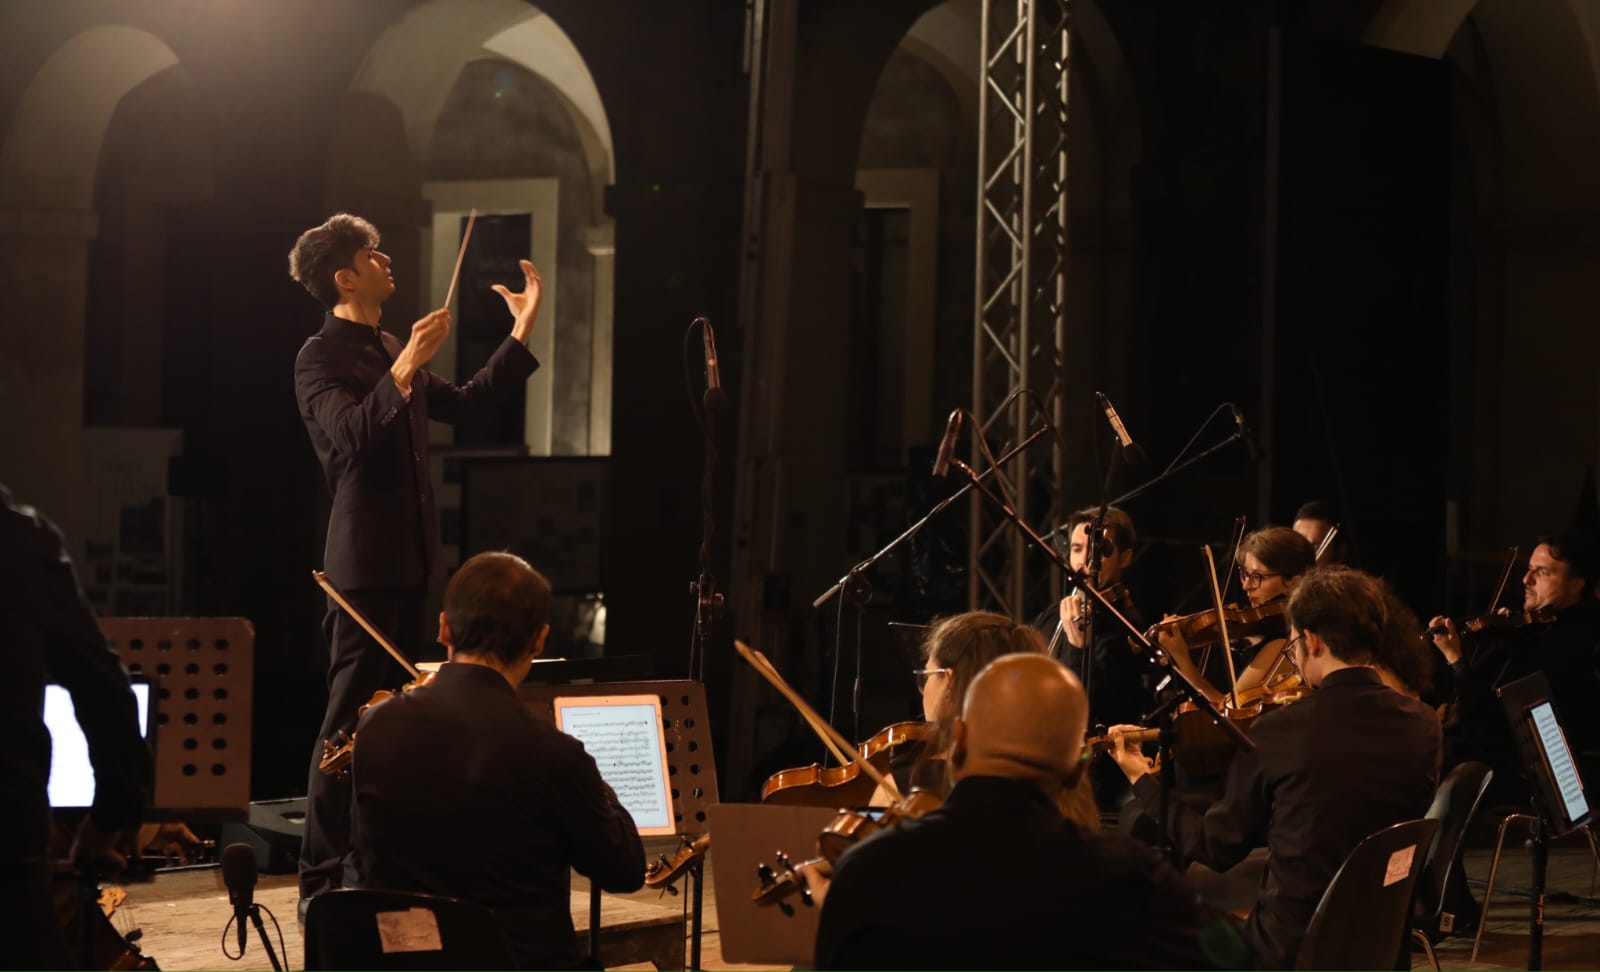 Palazzolo Acreide, al Complesso Vaccaro Torna l’Orchestra da Camera Orfeo